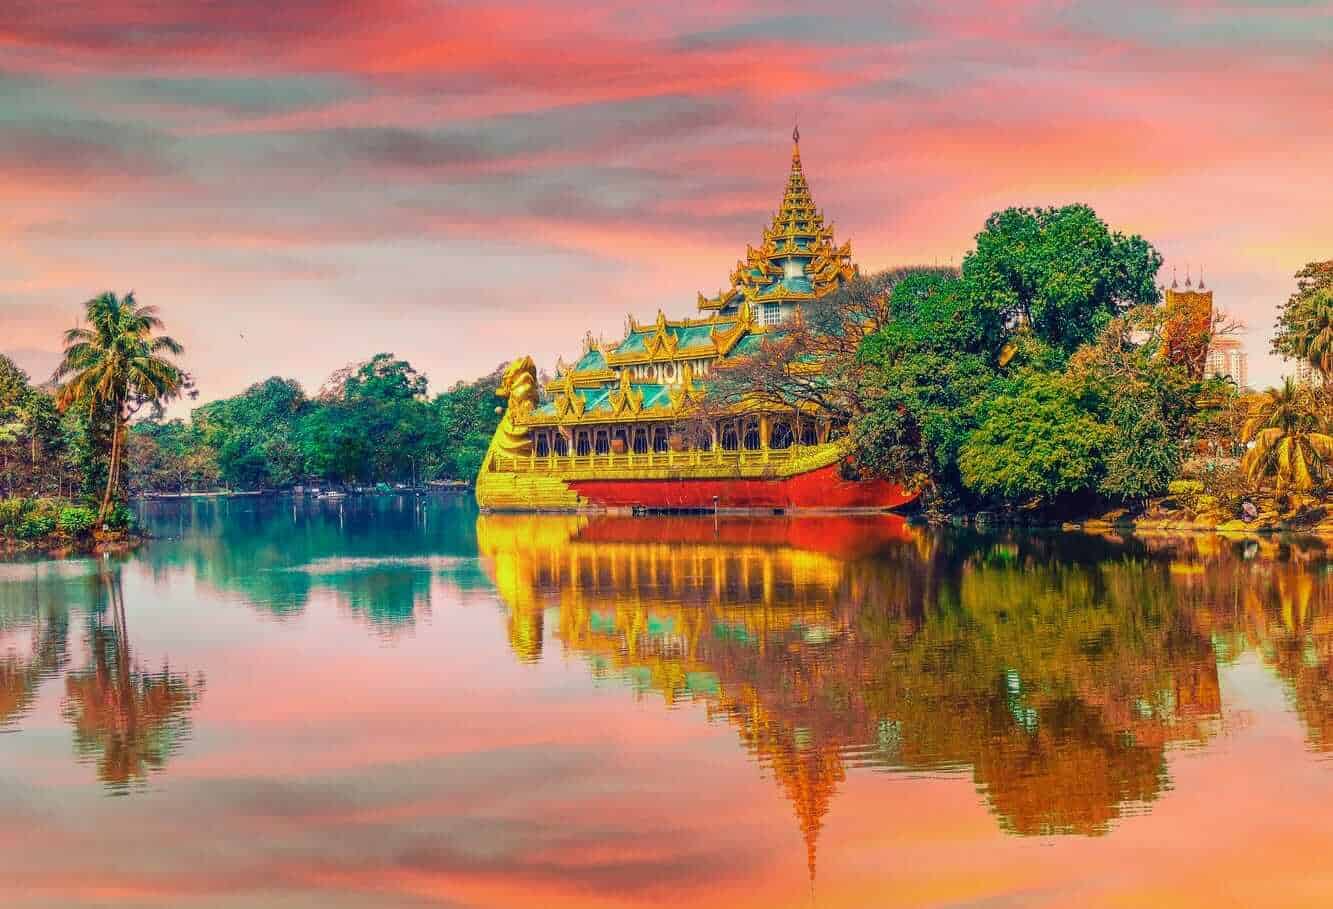 Yangon, Myanmar (Burma)